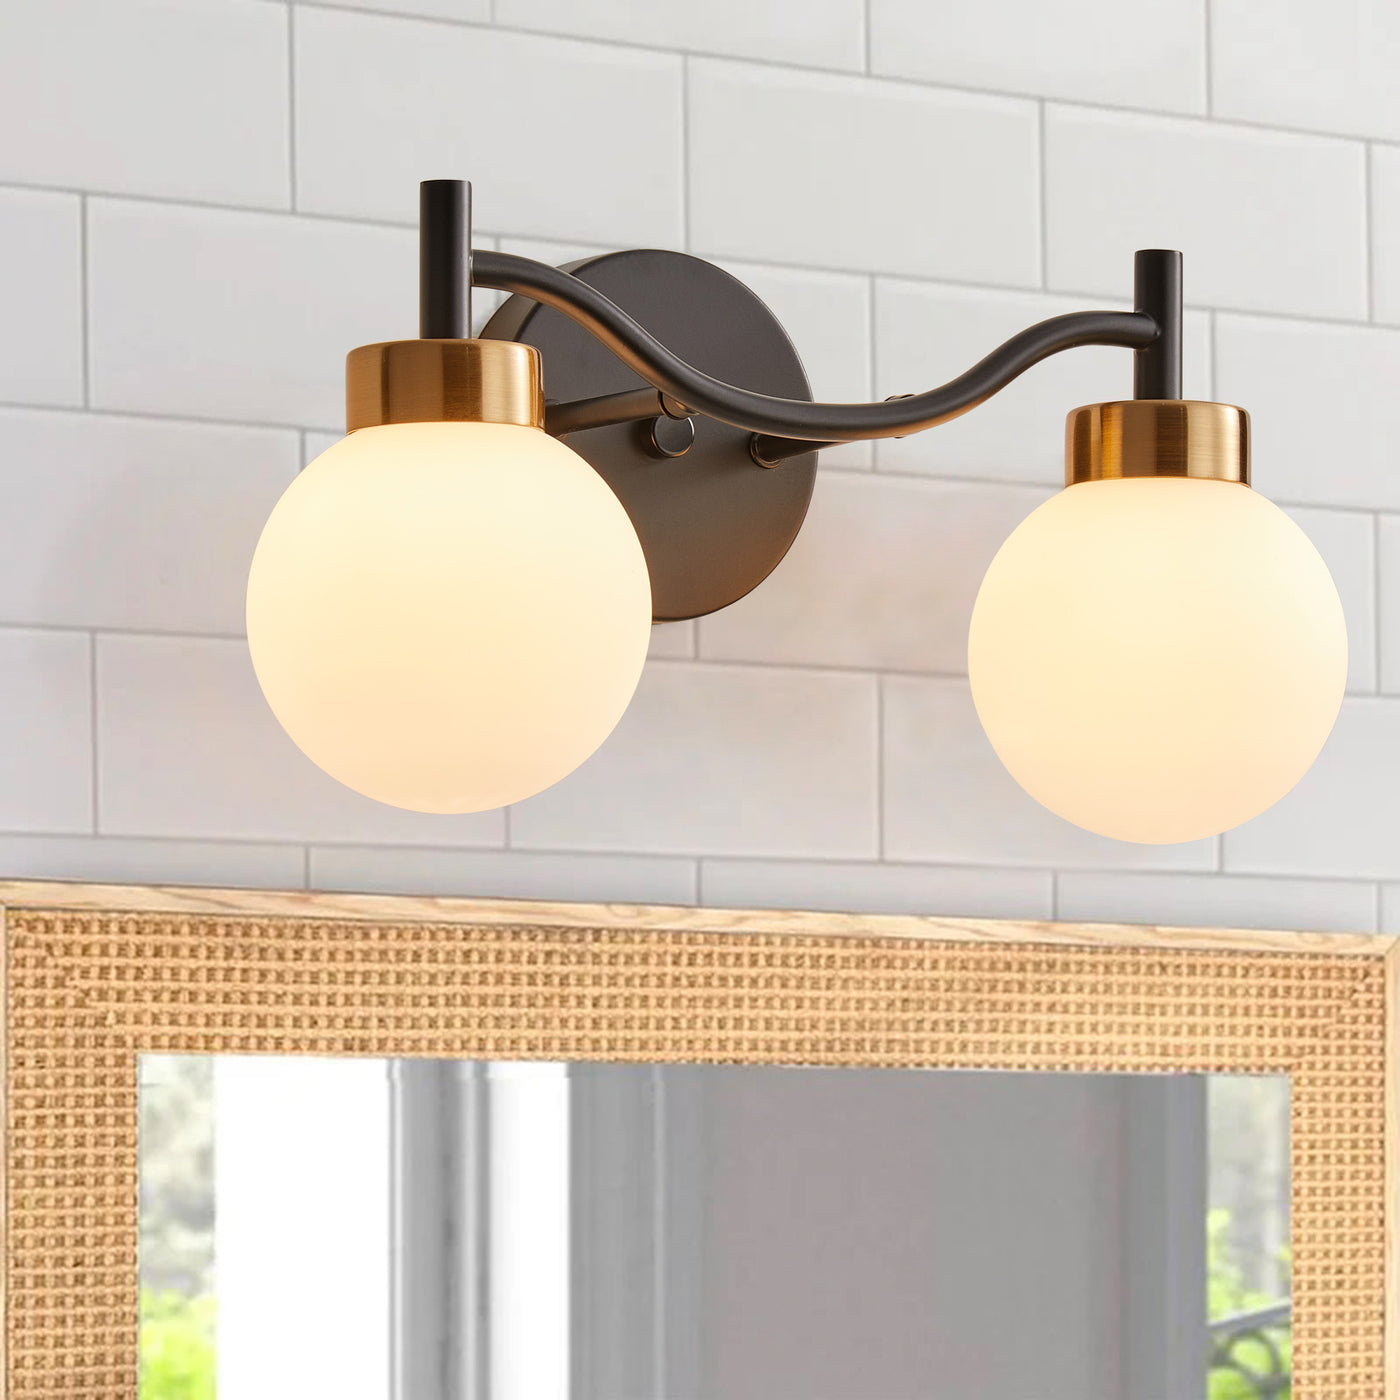 2-Lights Minimalist Bathroom Wall Sconces